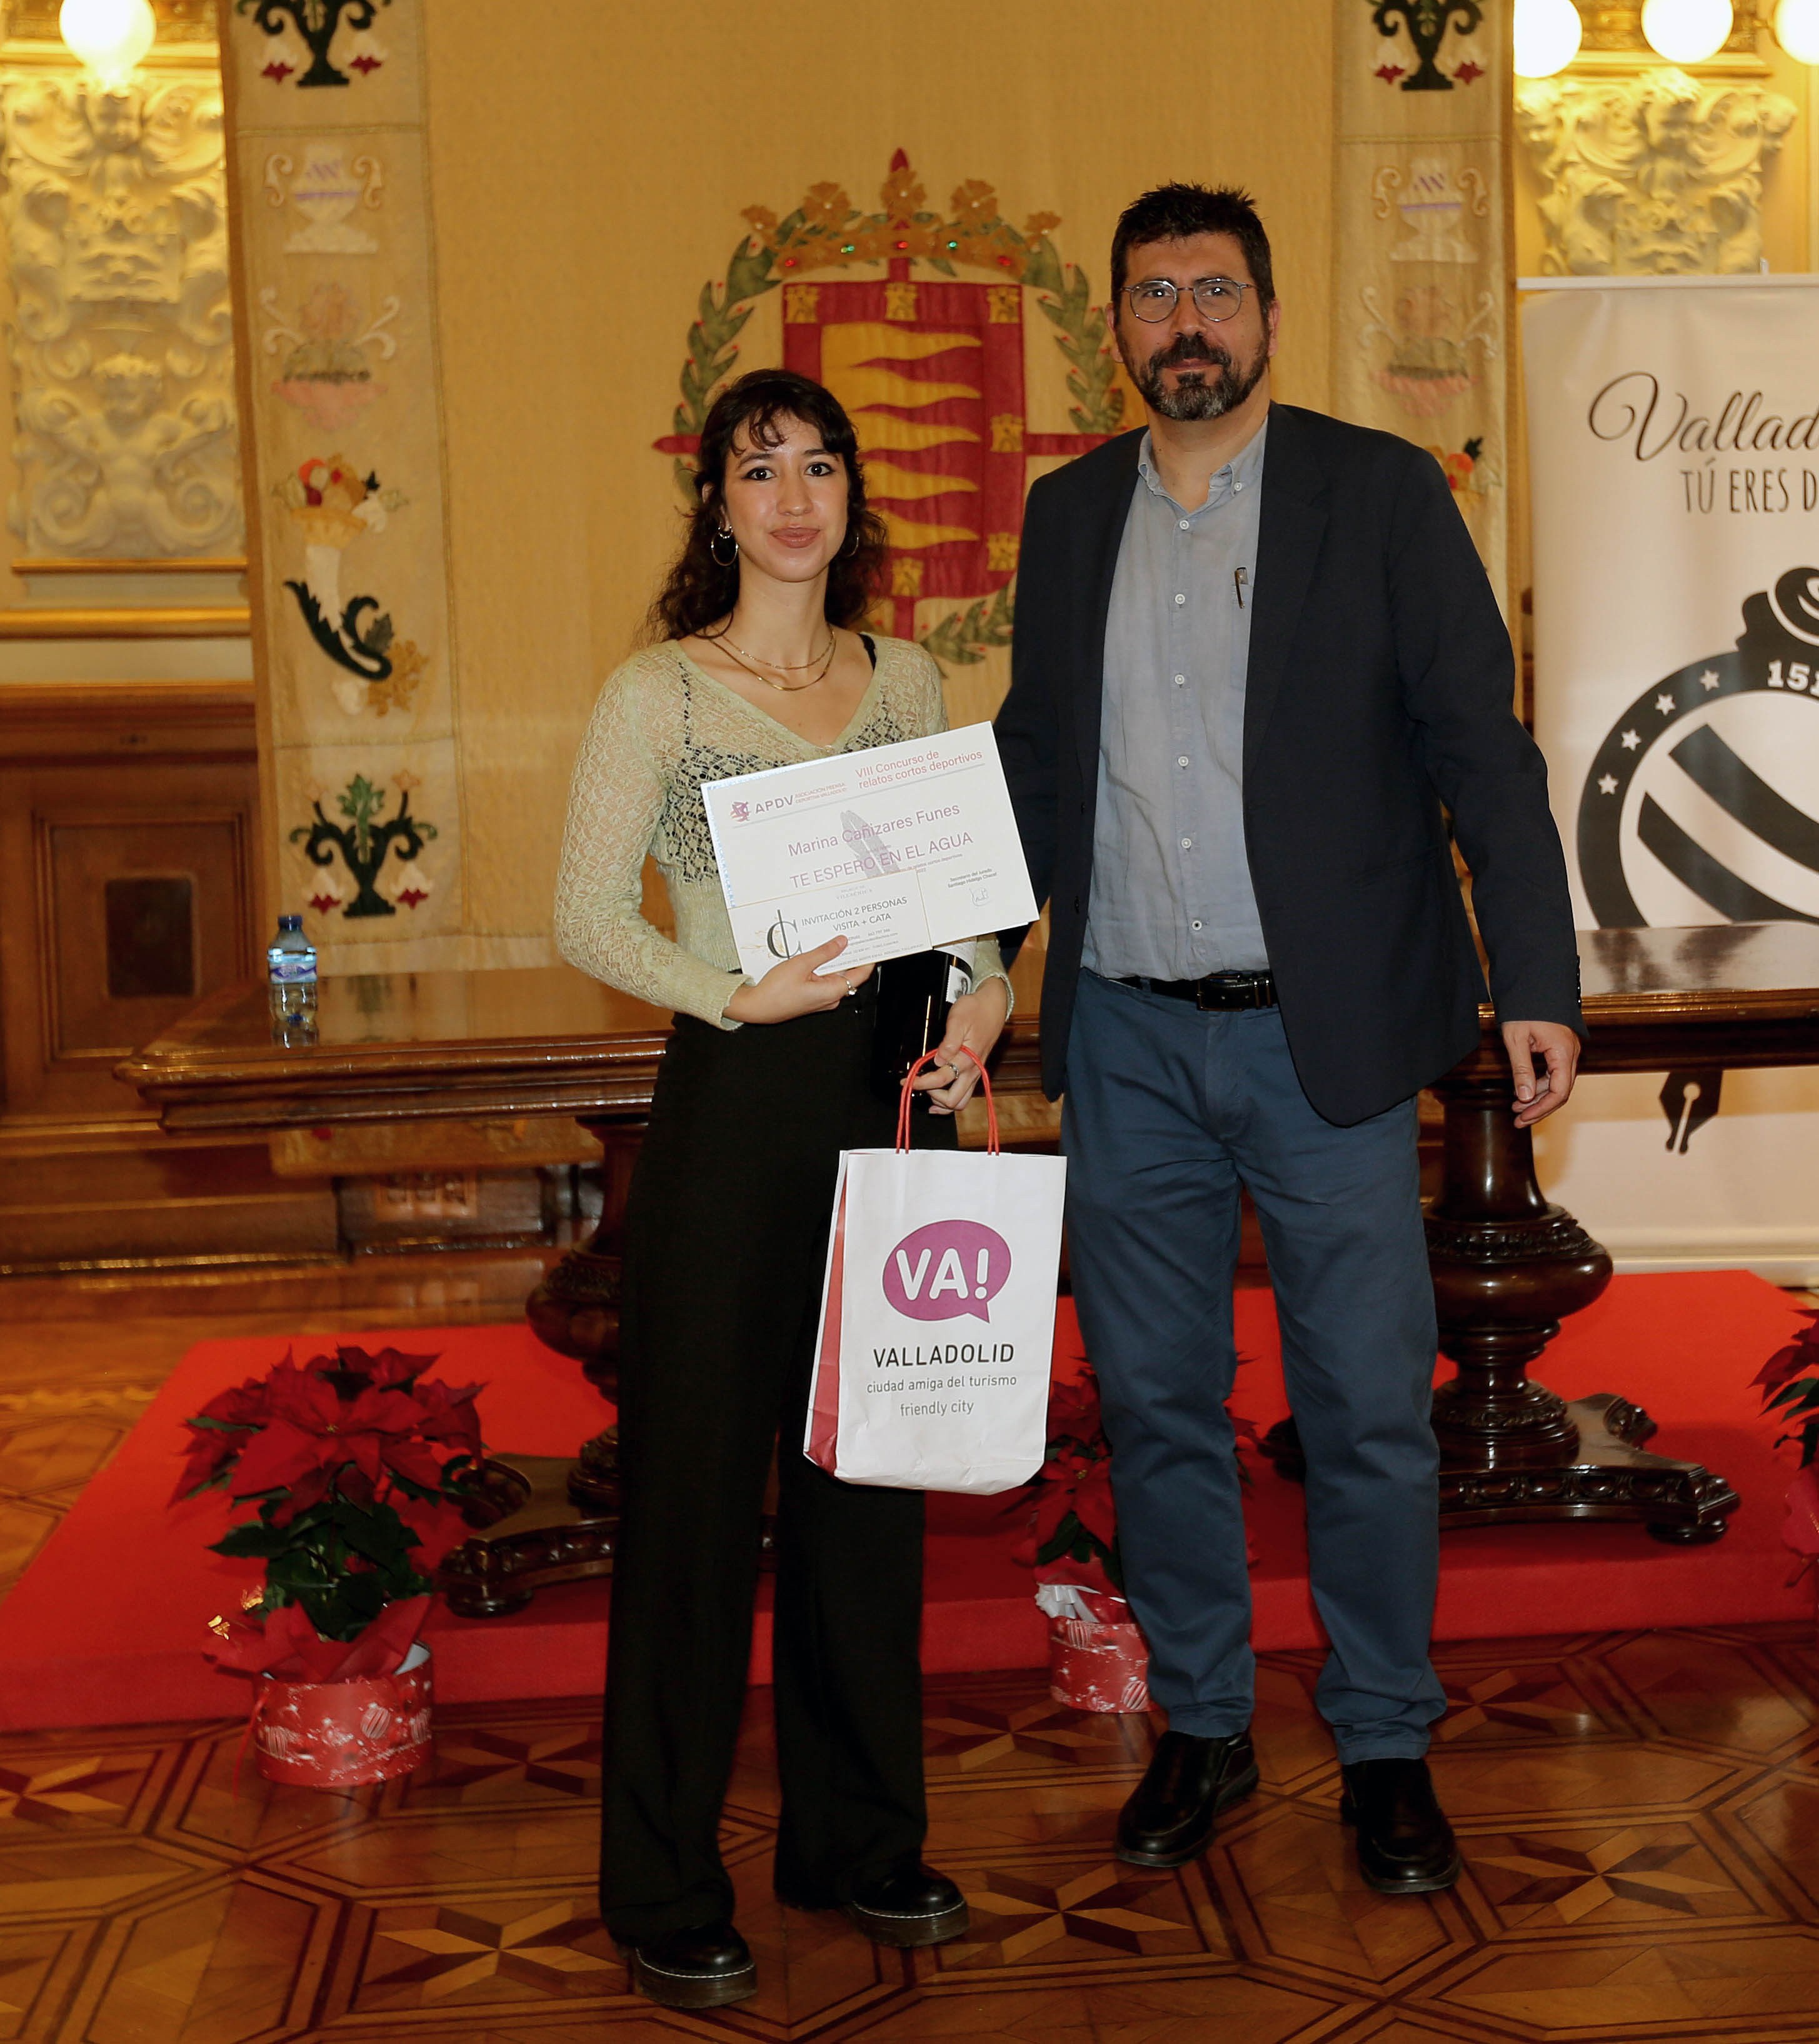 1º Premio Marina Cañizares Funes, entregado por Alberto Bustos Concejal de Participación Ciudadana y Deportes